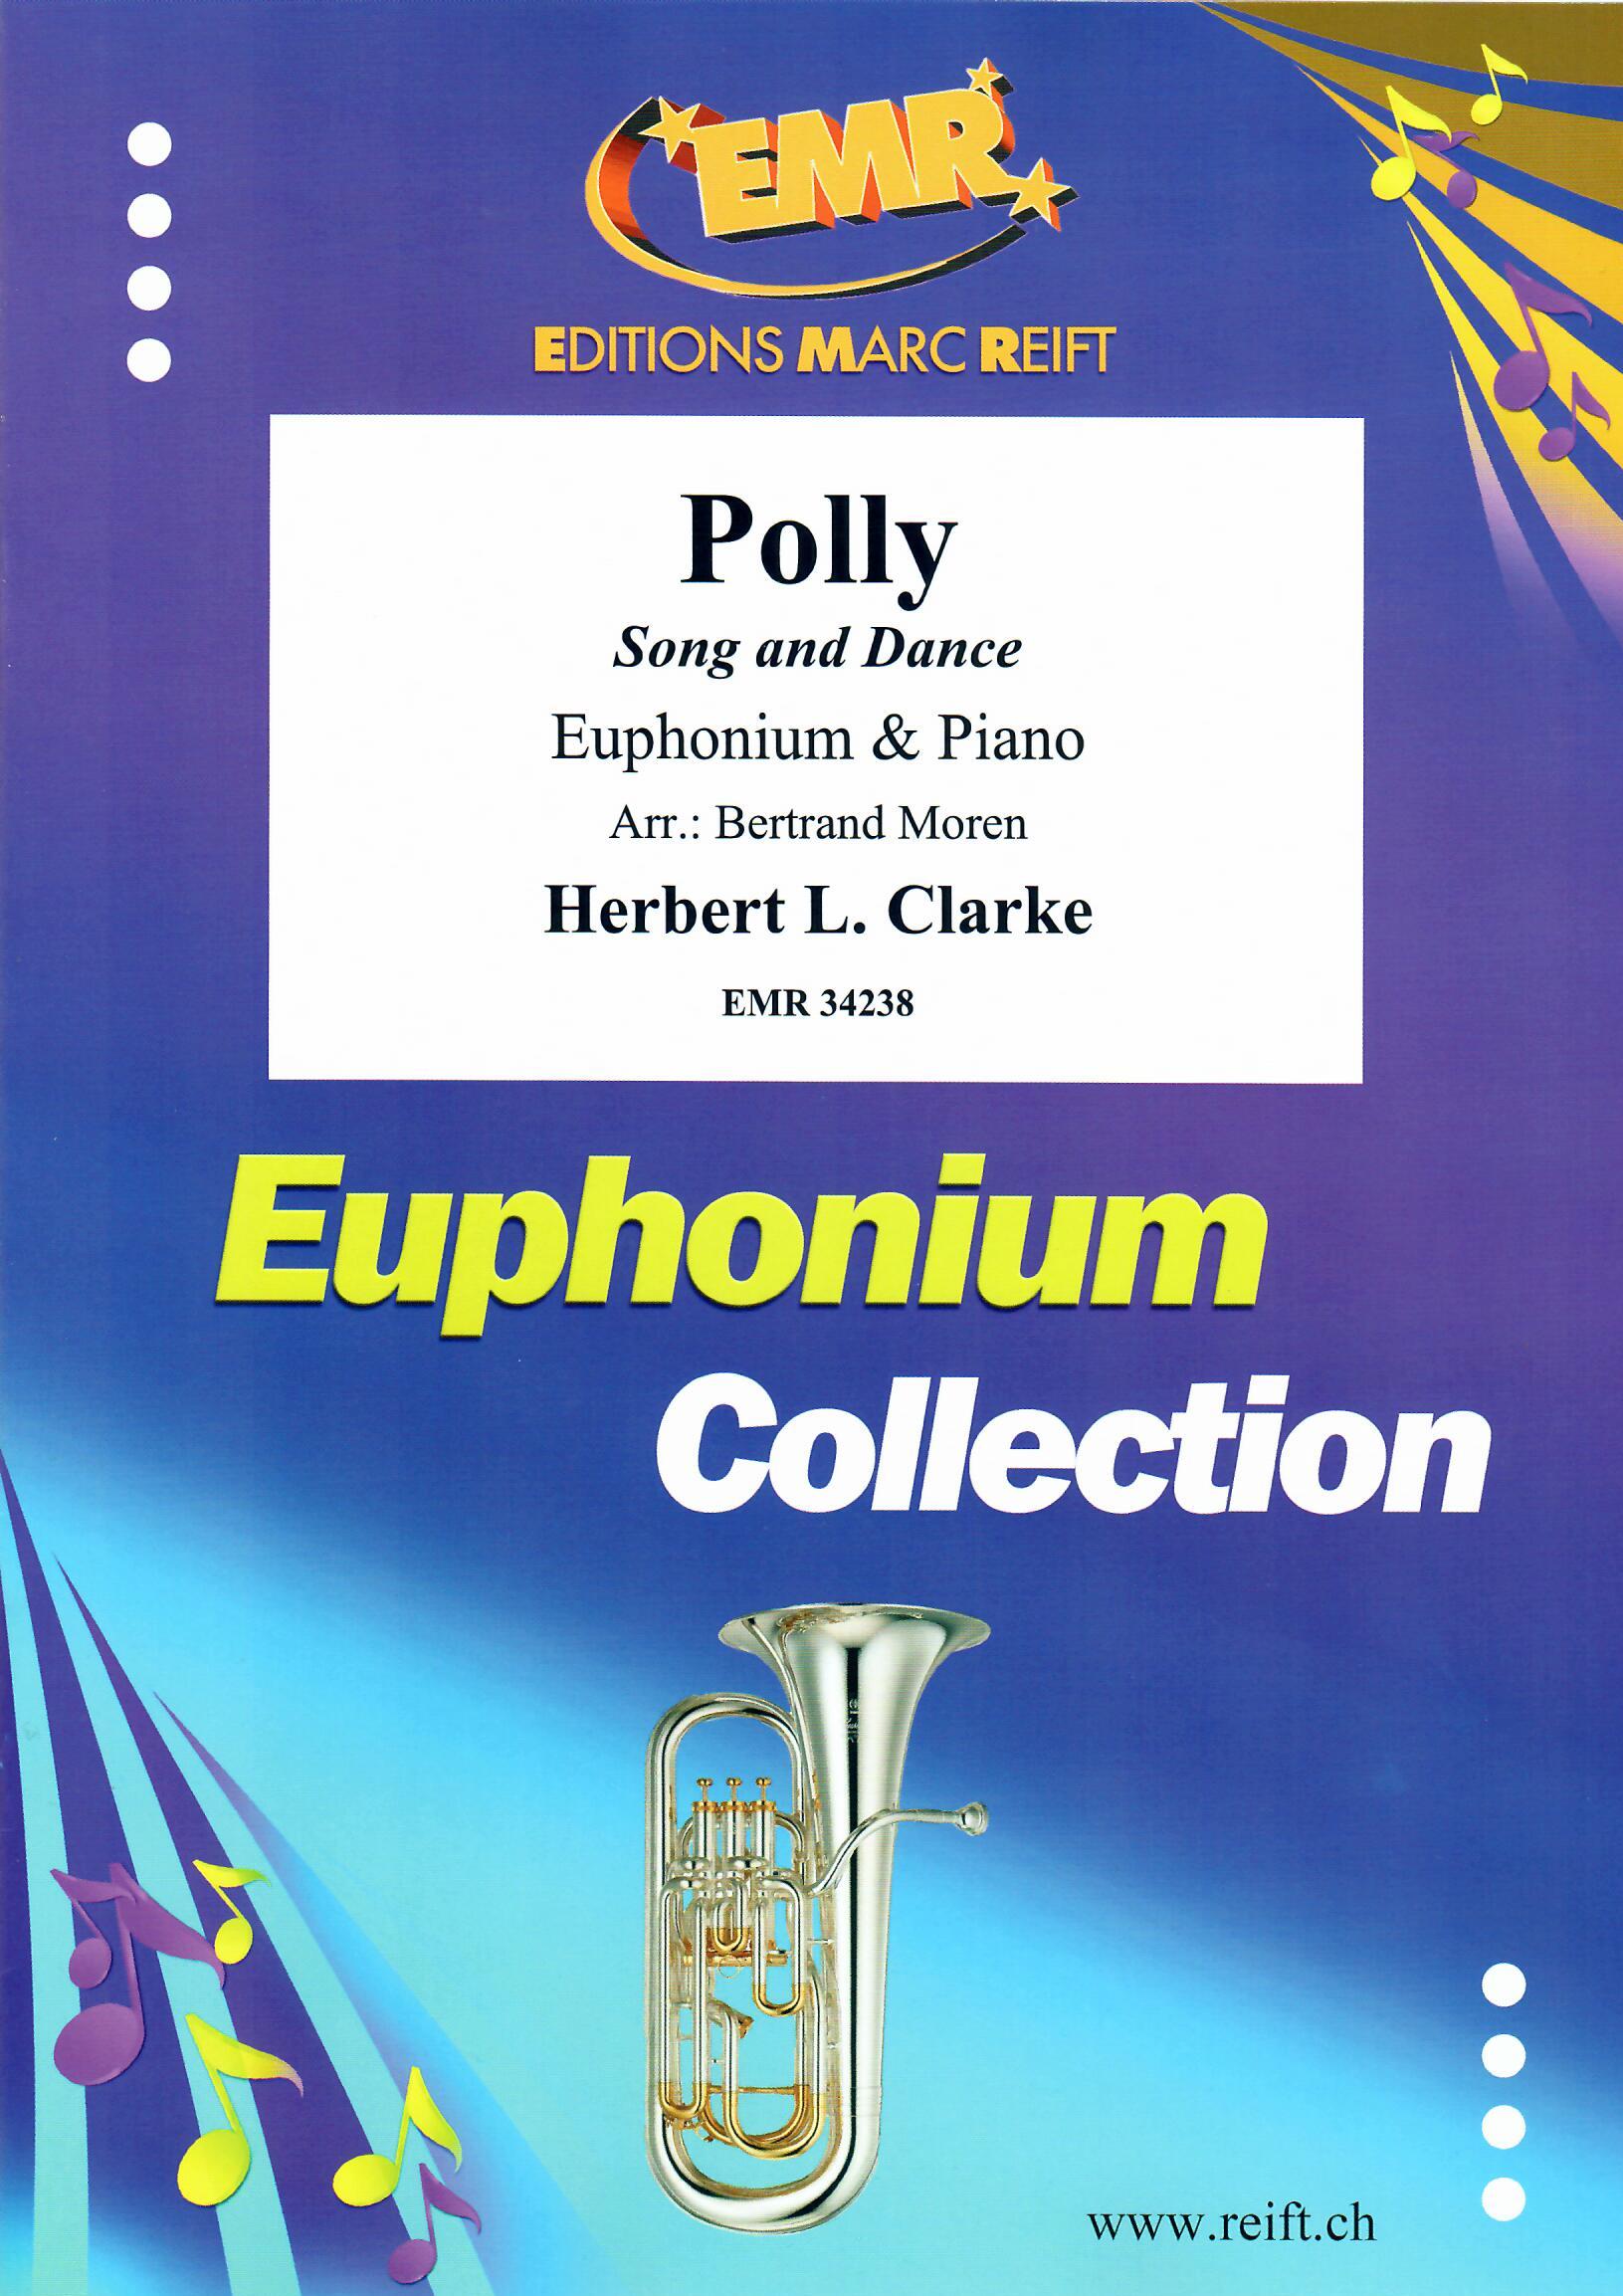 POLLY, SOLOS - Euphonium